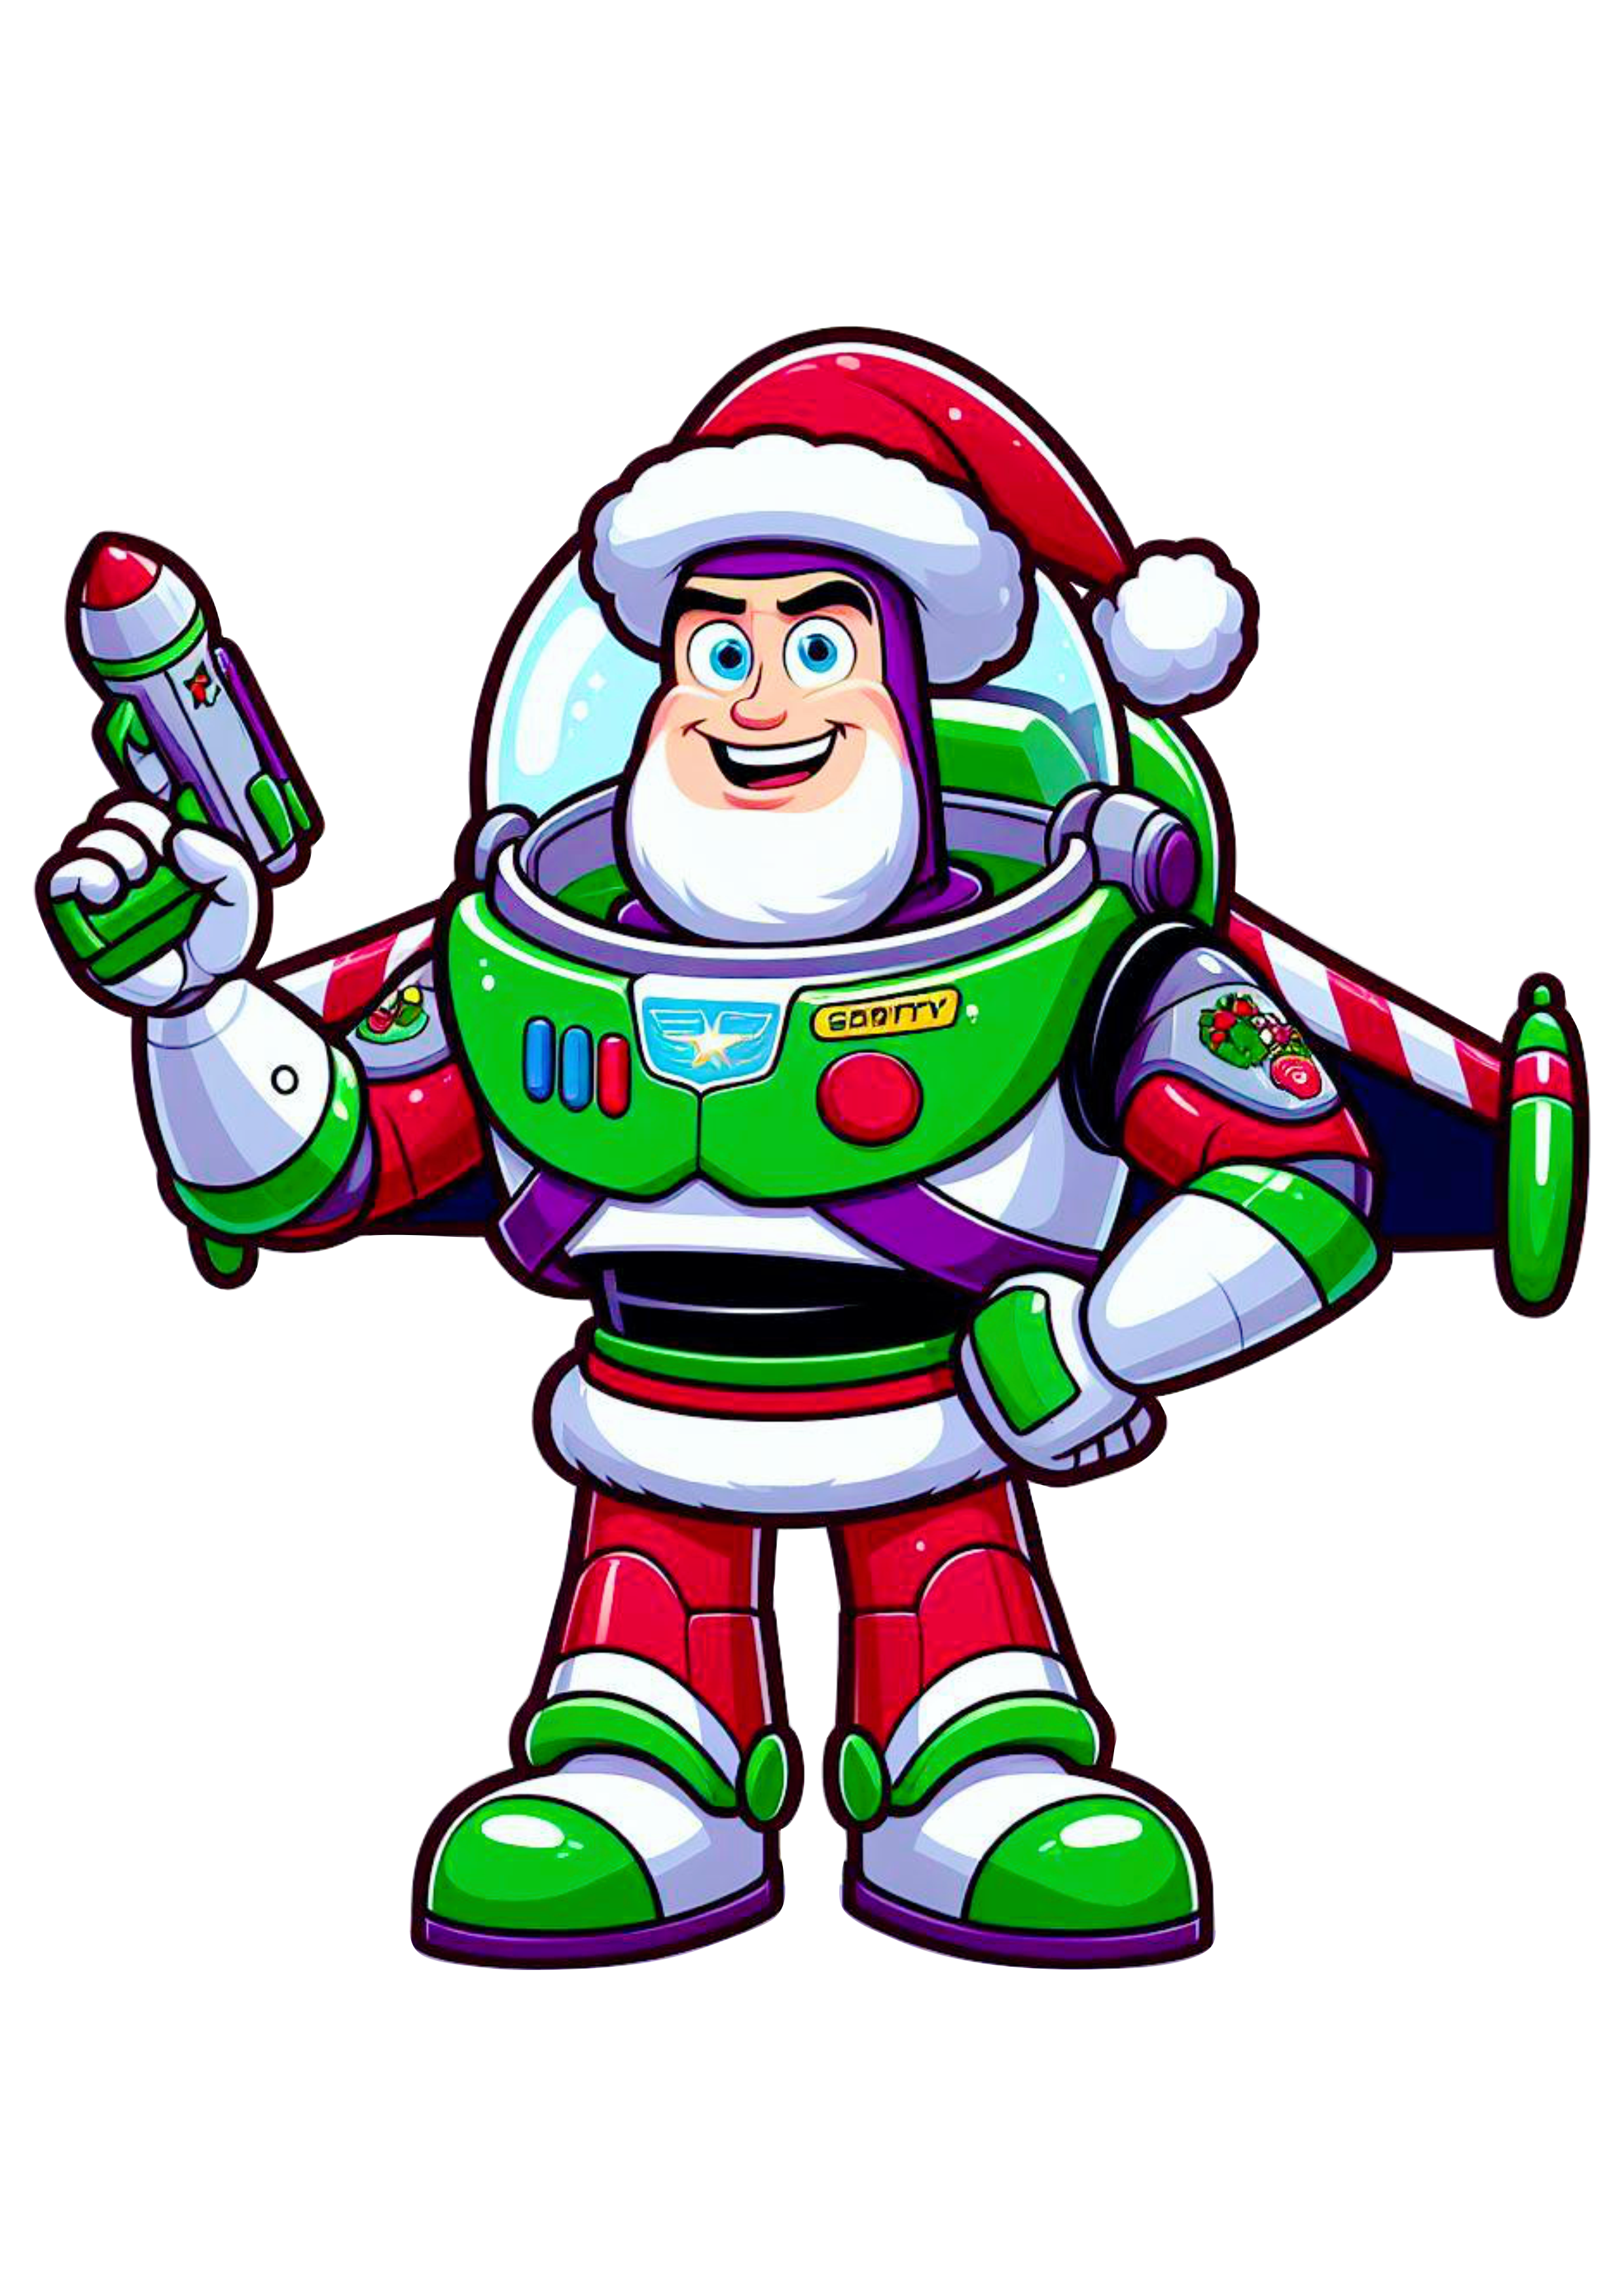 Toy Story Buzz Lightyear brinquedo astronauta especial de natal desenho infantil ilustração png